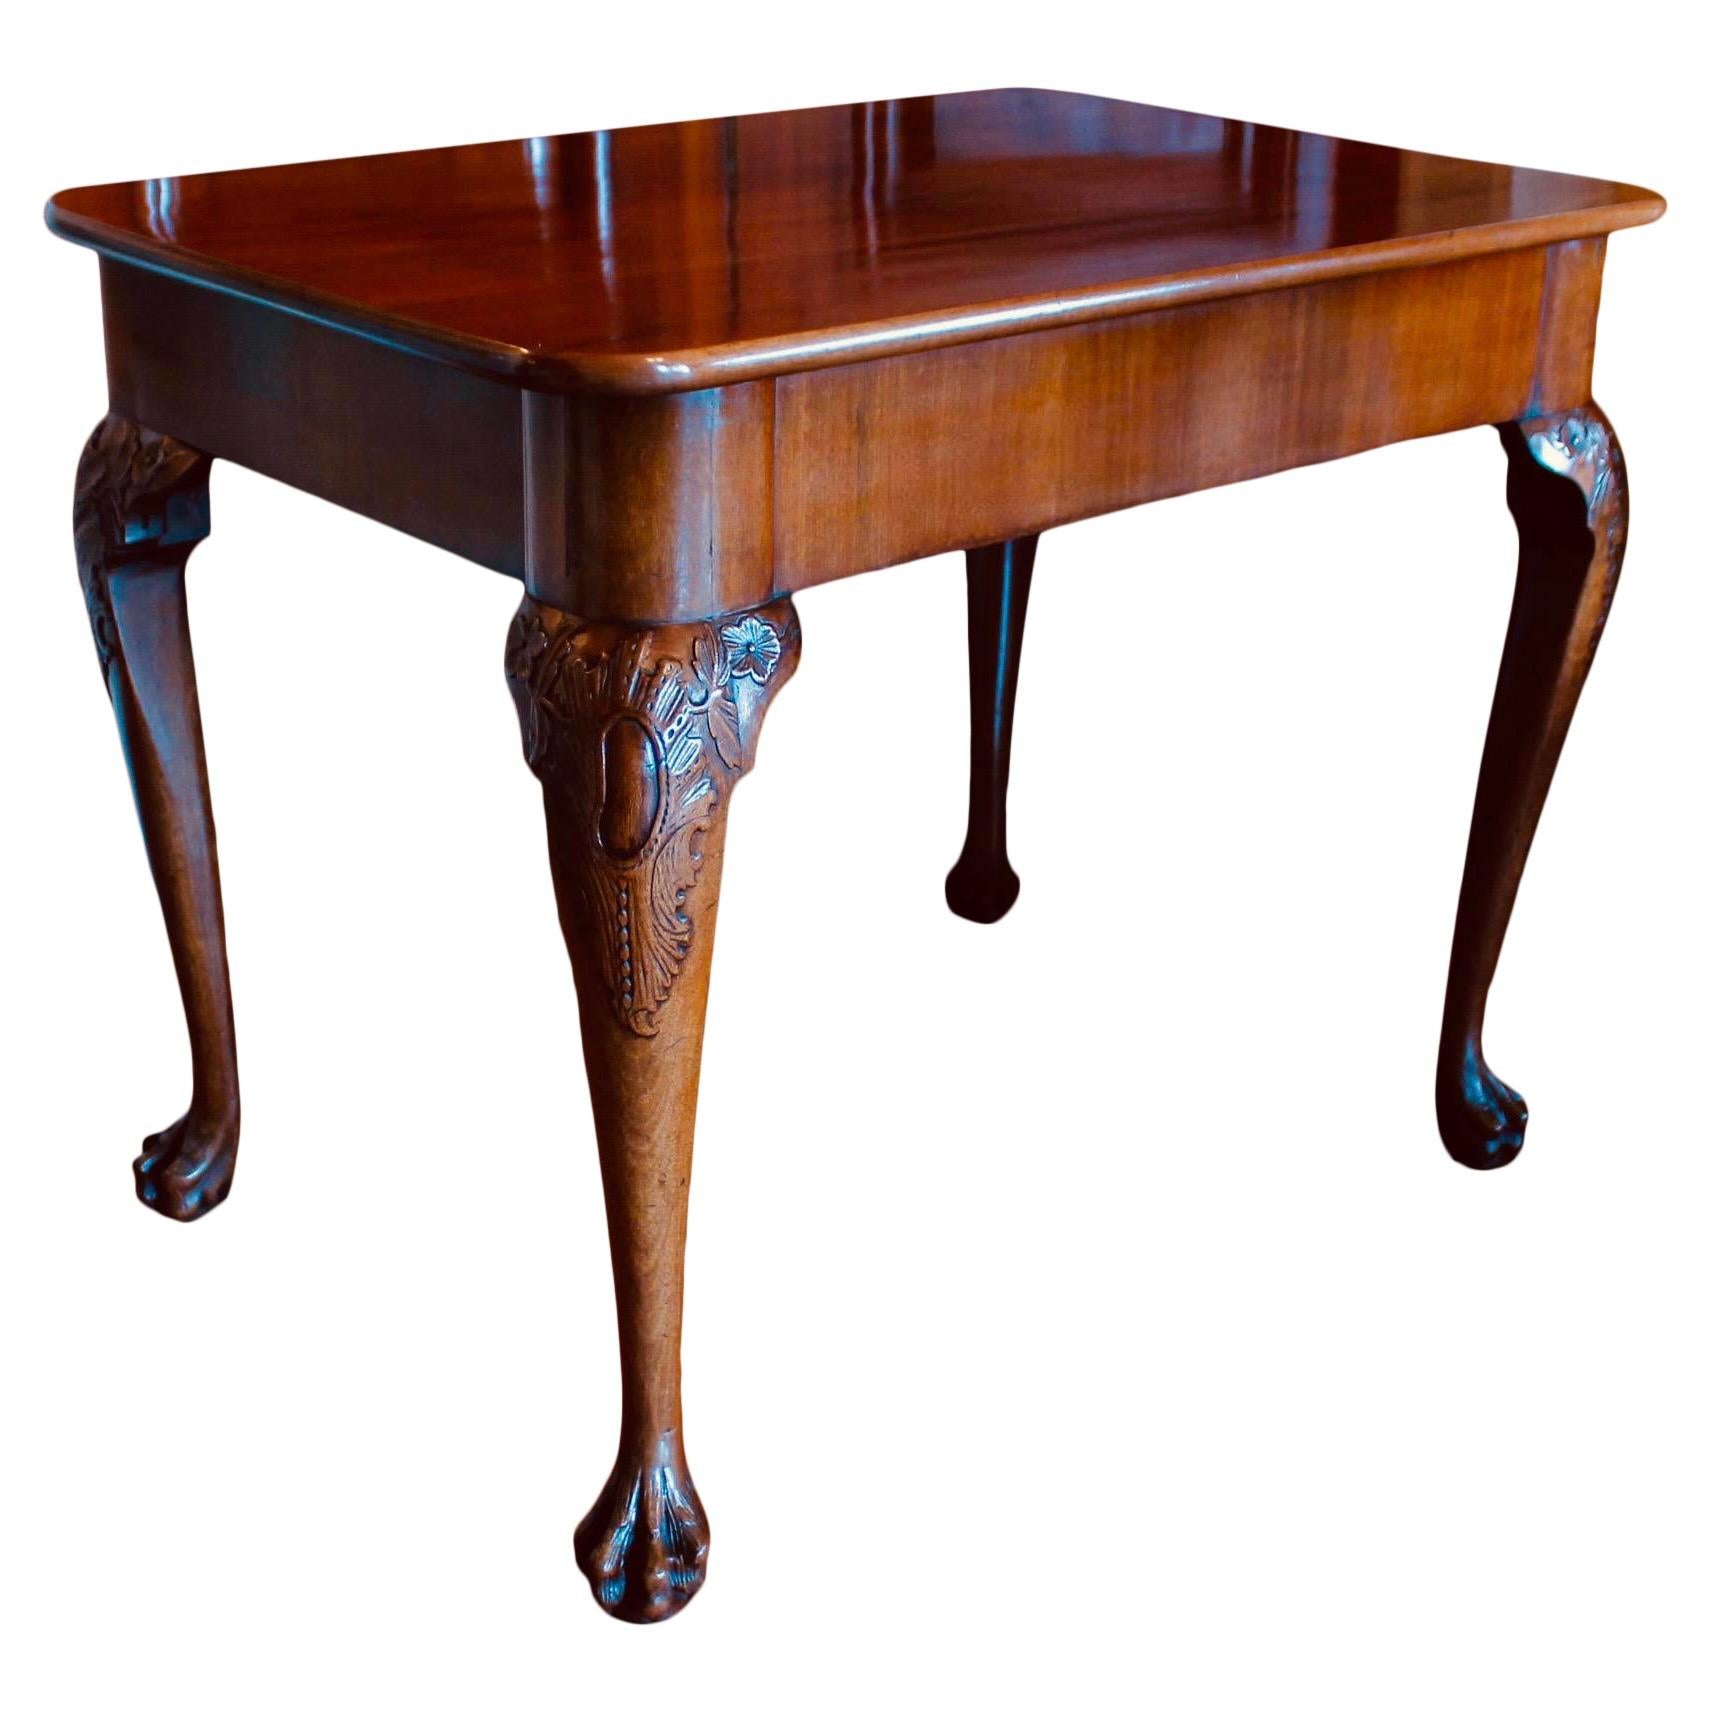 Ein schöner Tisch aus georgianischem Mahagoni, der an allen vier Seiten bearbeitet ist, so dass er freistehend verwendet werden kann. Der Tisch kann auch als Konsolentisch verwendet werden, wobei eine Längsseite des Rahmens dezente Turmecken